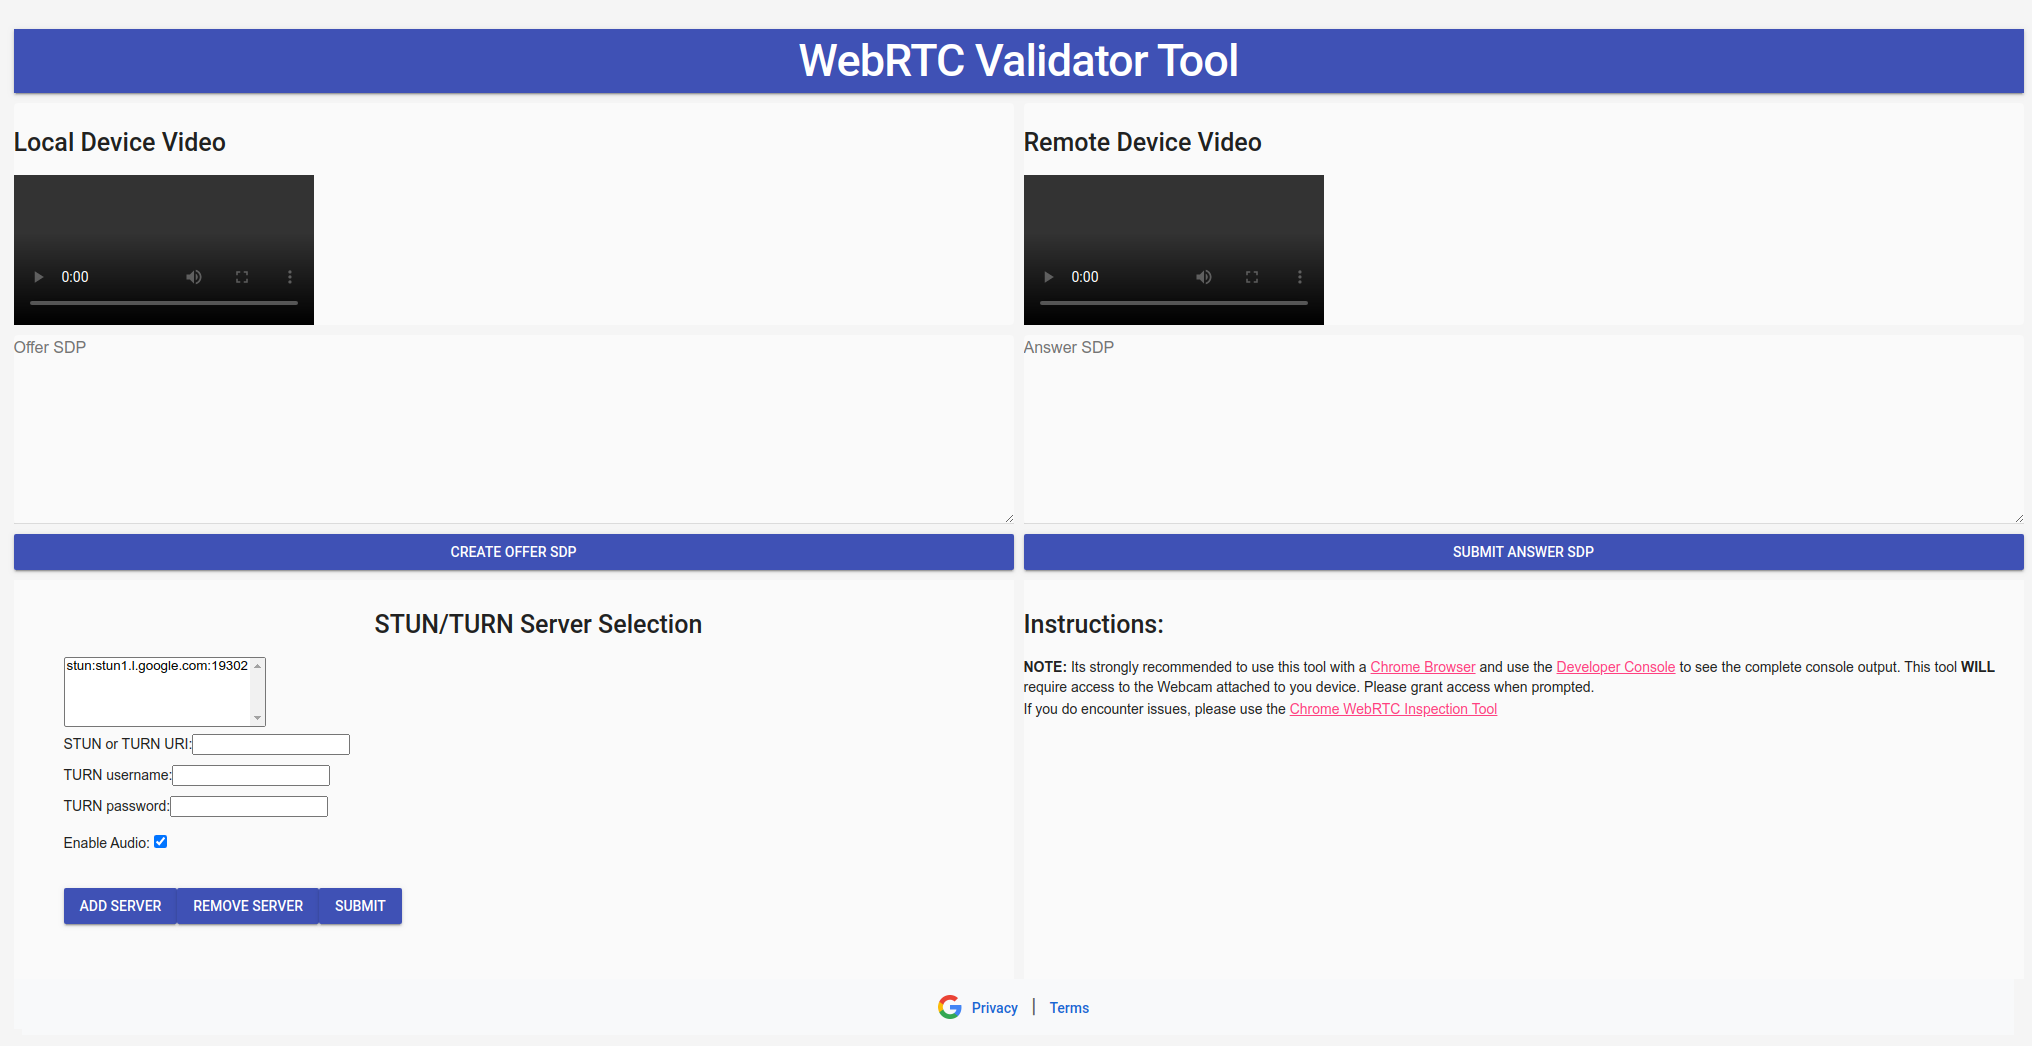 รูปภาพภาพรวมของเครื่องมือตรวจสอบ WebRTC